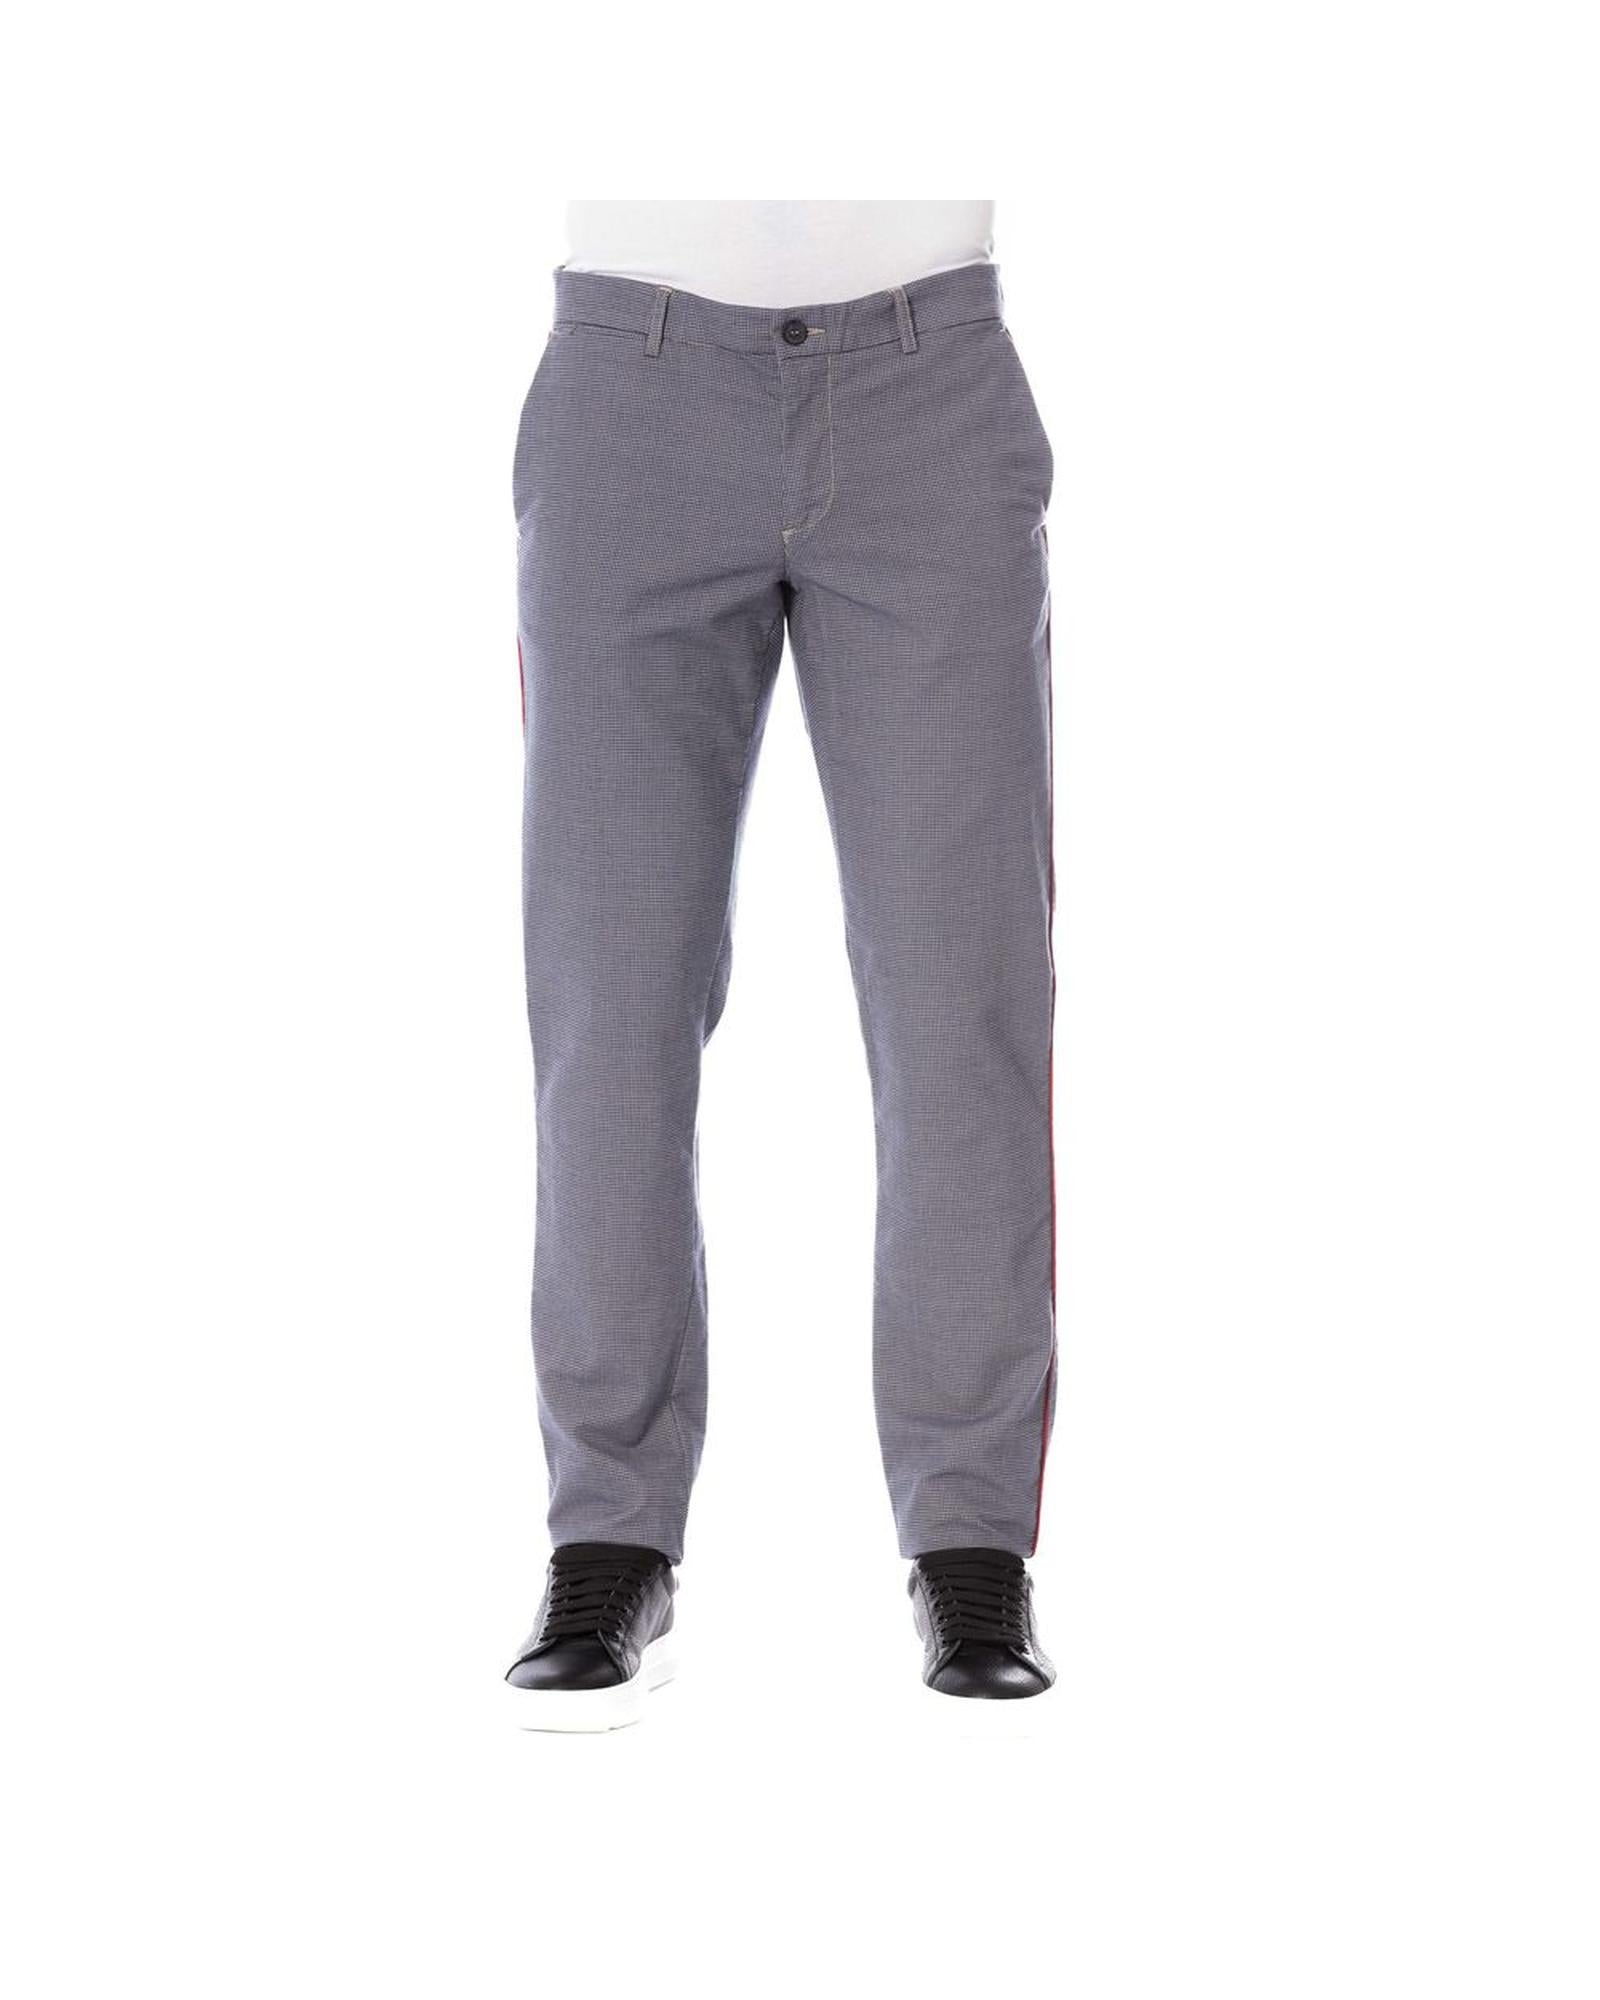 Men's Blue Cotton Jeans & Pant - W48 US